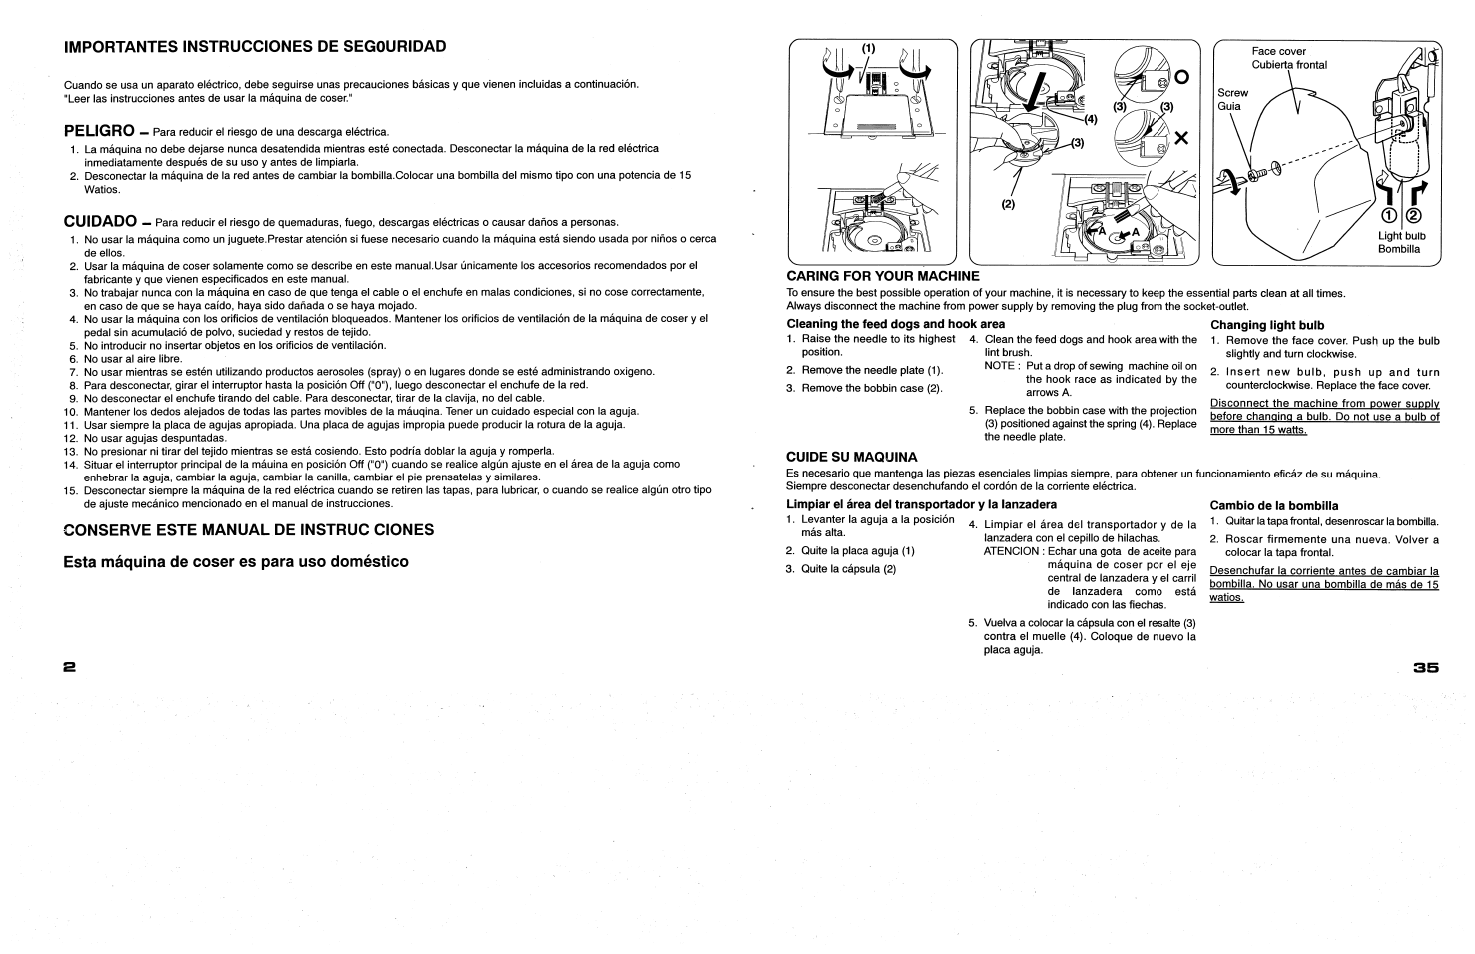 Importantes instrucciones de segouridad, Peligro, Cuidado | SINGER 117 FEATHERWEIGHT II User Manual | Page 4 / 40